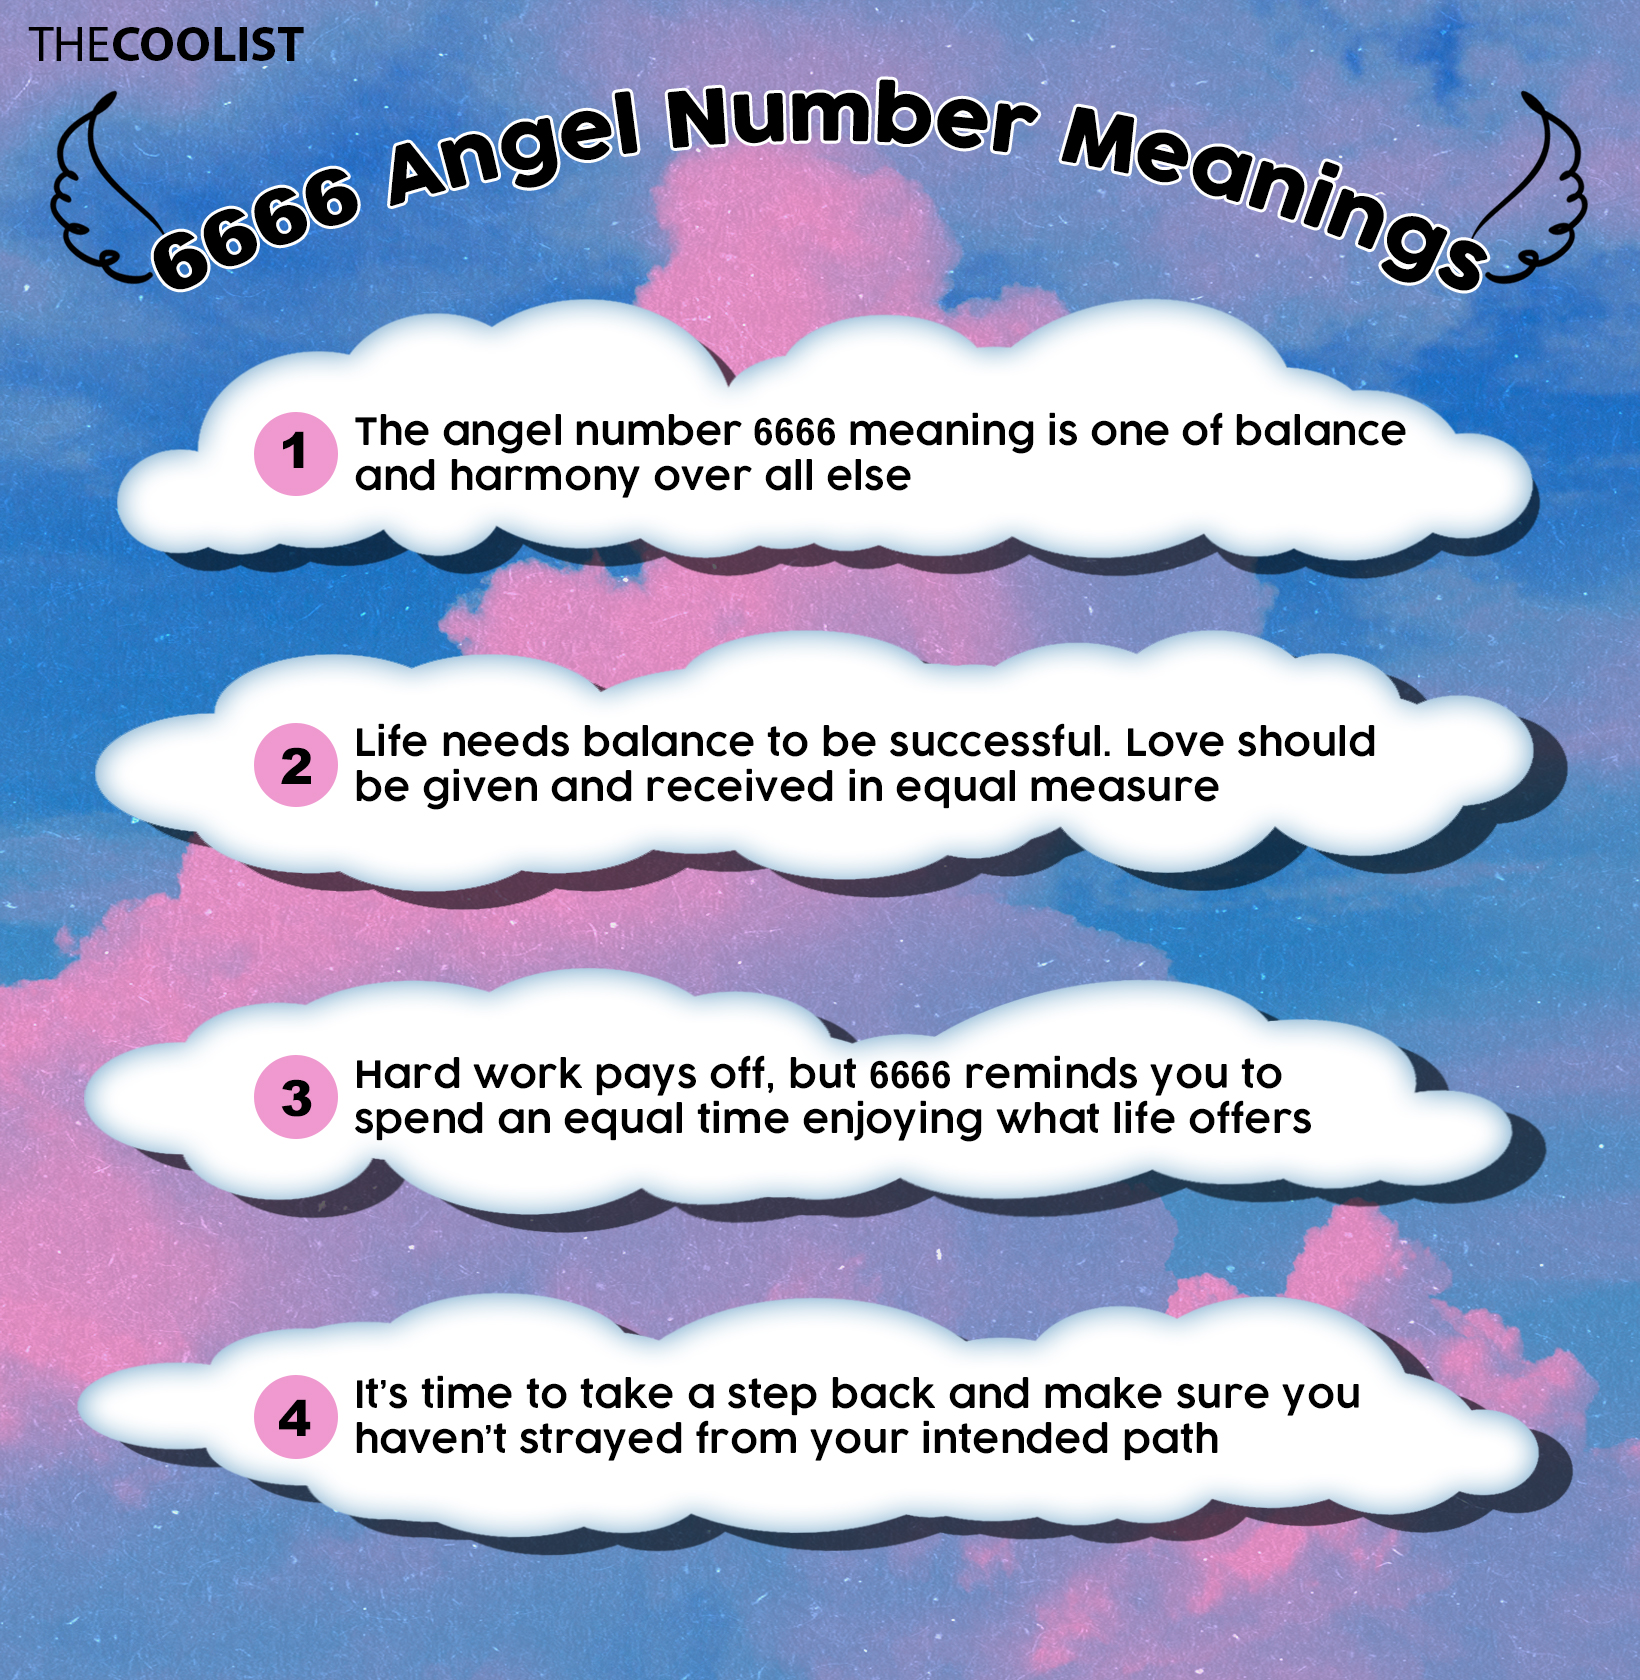  Numărul de înger 6666: Semnificație, semnificație, flacără geamănă și dragoste